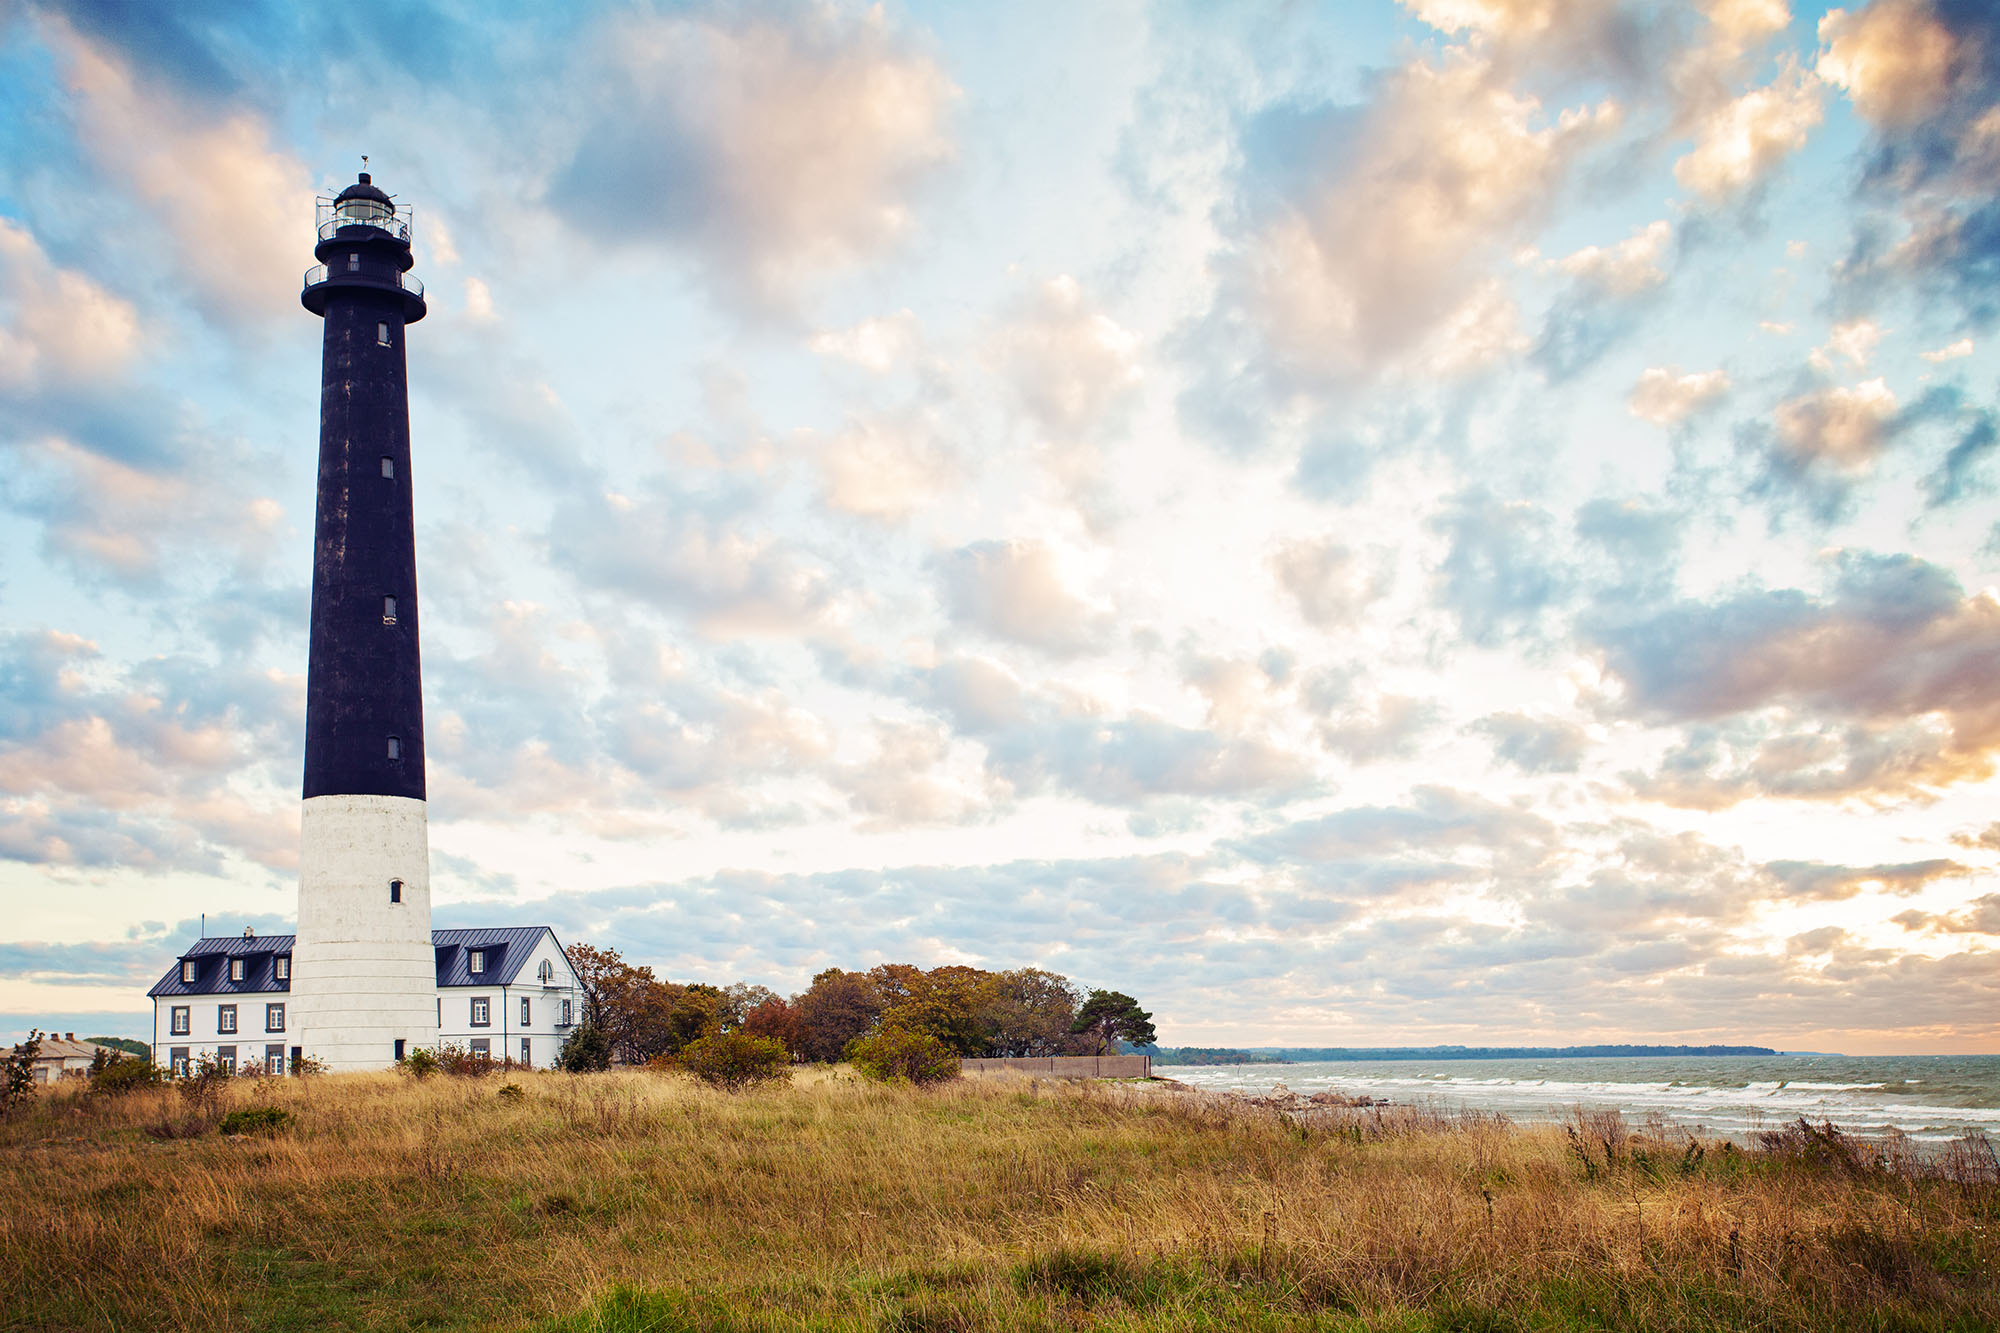 Saaremaa island, Estonia. Sorve lighthouse on the Baltic sea coast